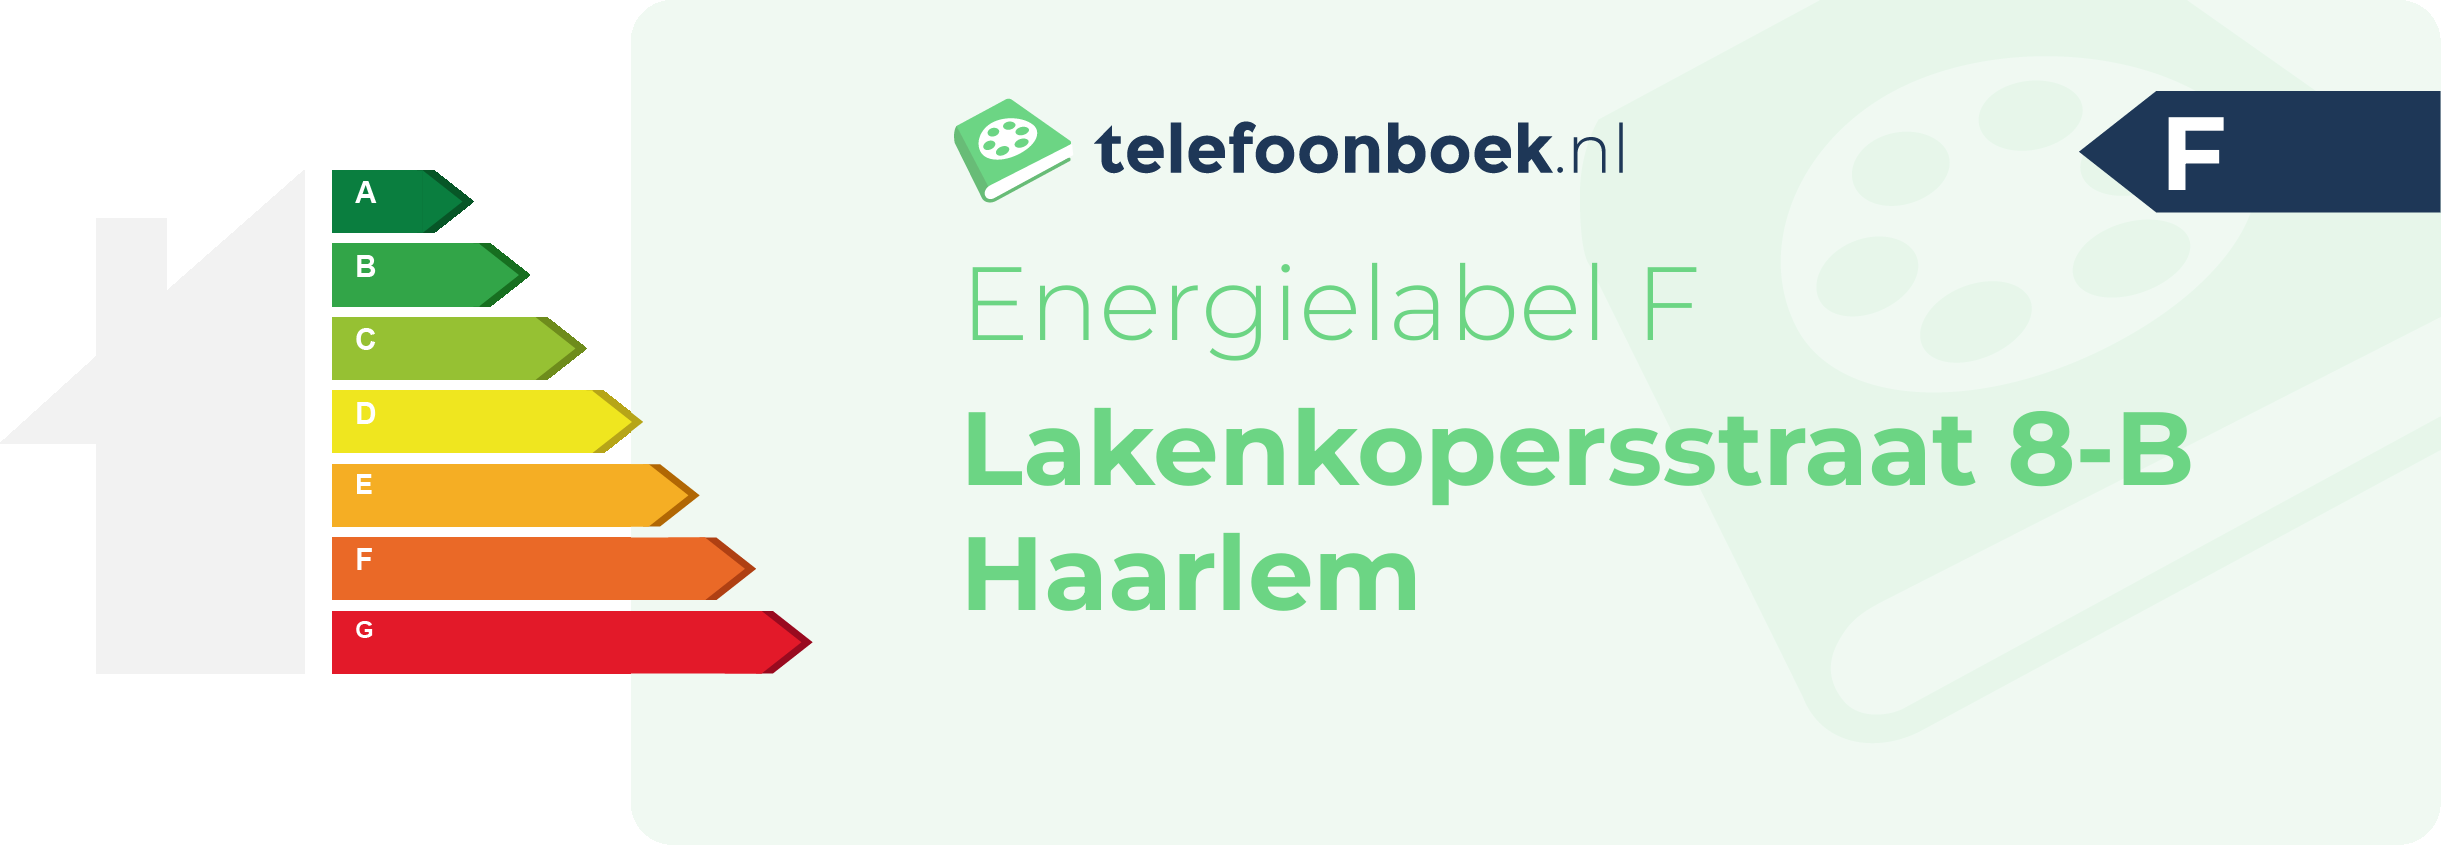 Energielabel Lakenkopersstraat 8-B Haarlem